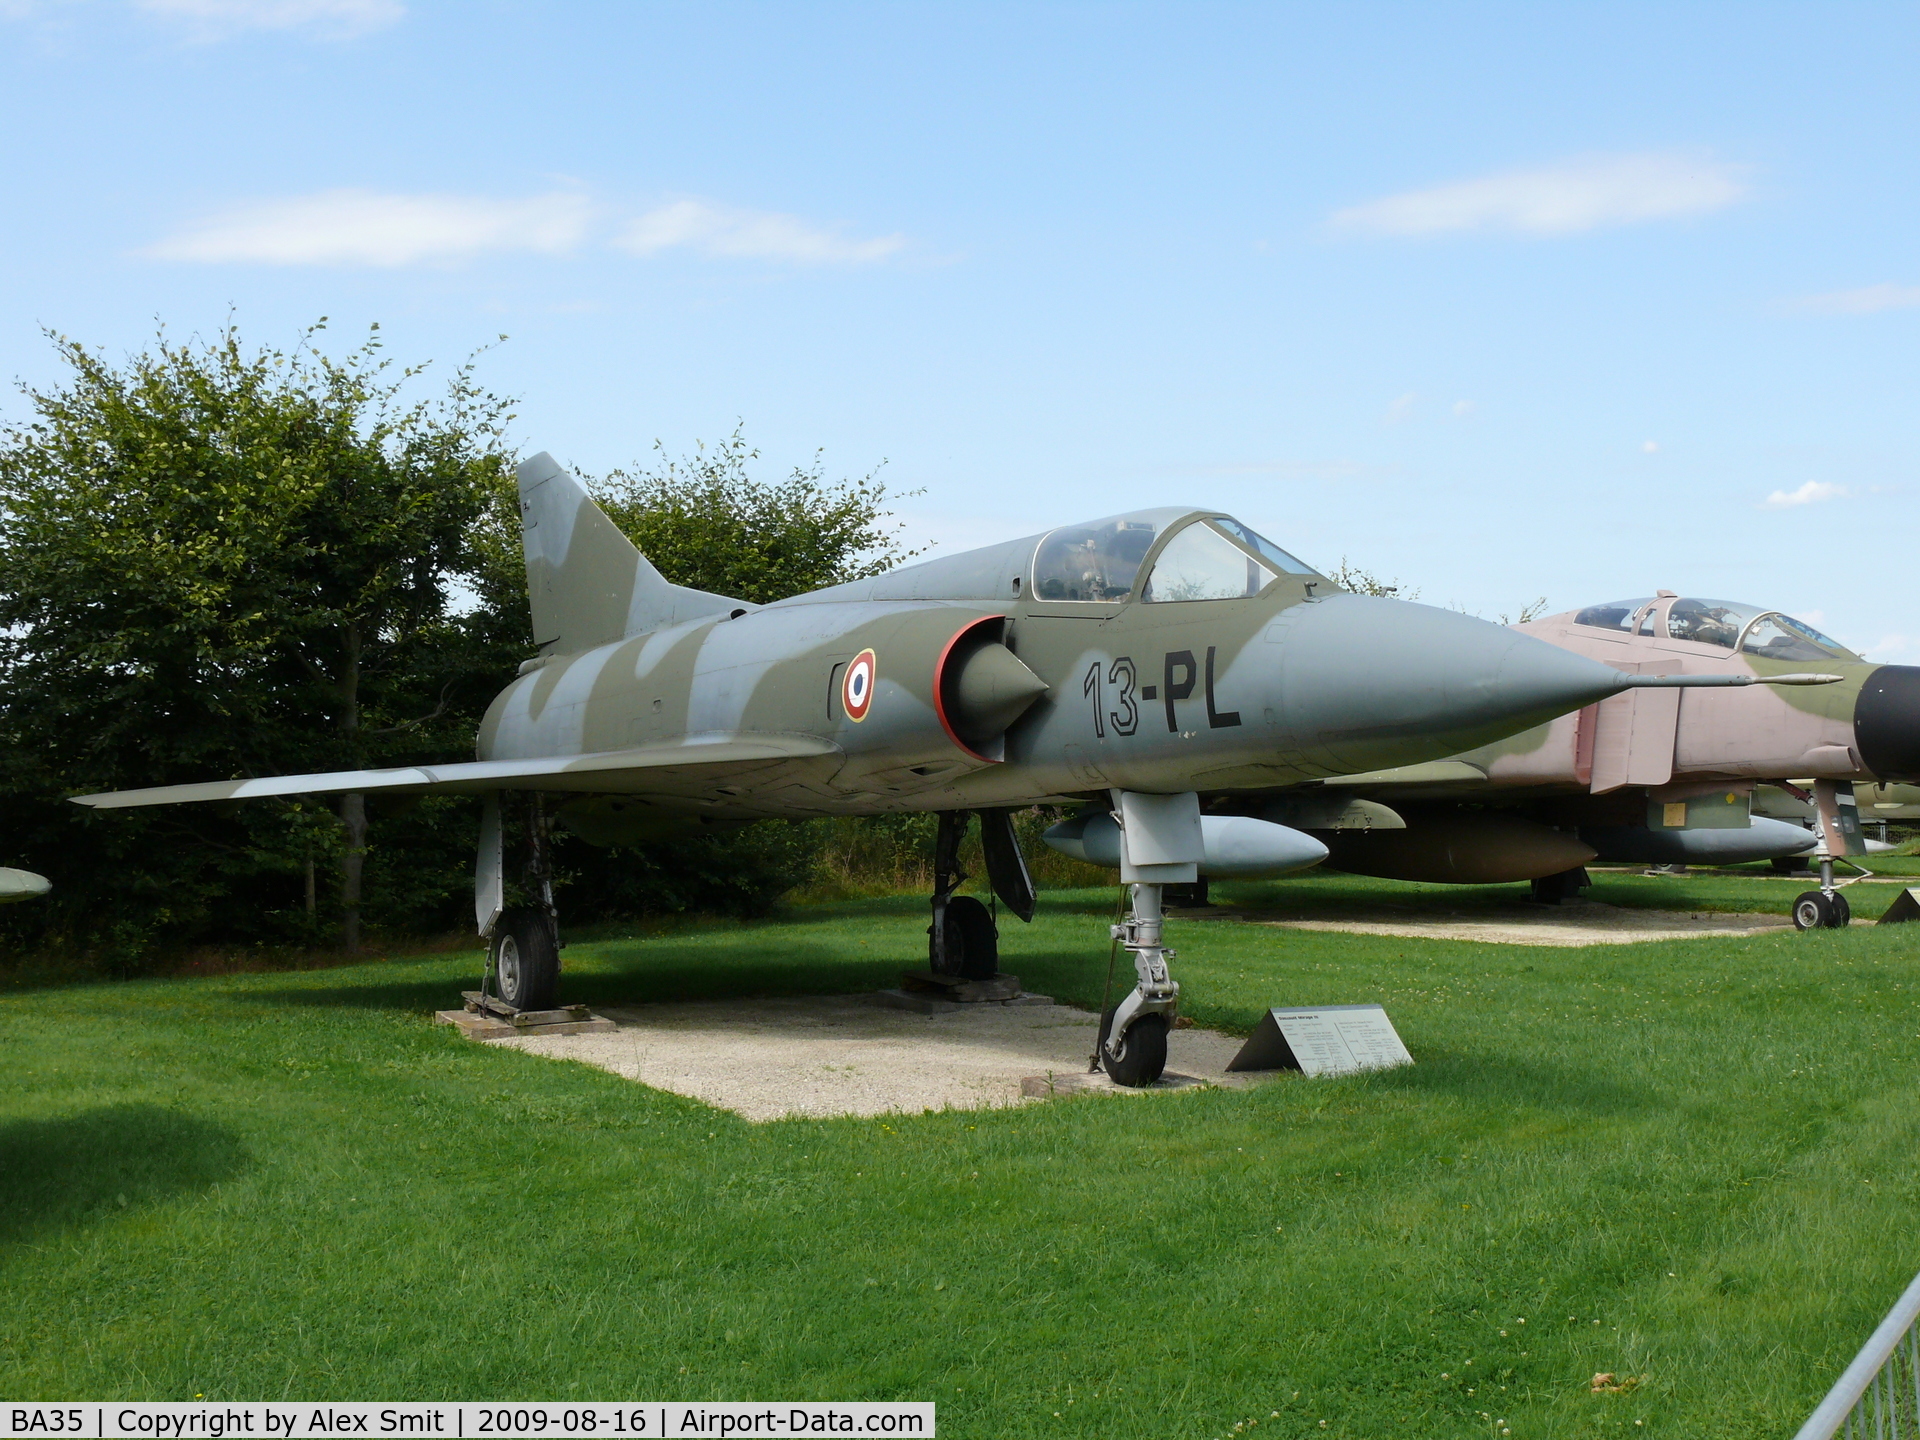 BA35, SABCA Mirage 5BA C/N 35, Dassault Mirage VBA 13-PL French Air Force in the Hermerskeil Museum Flugausstellung Junior